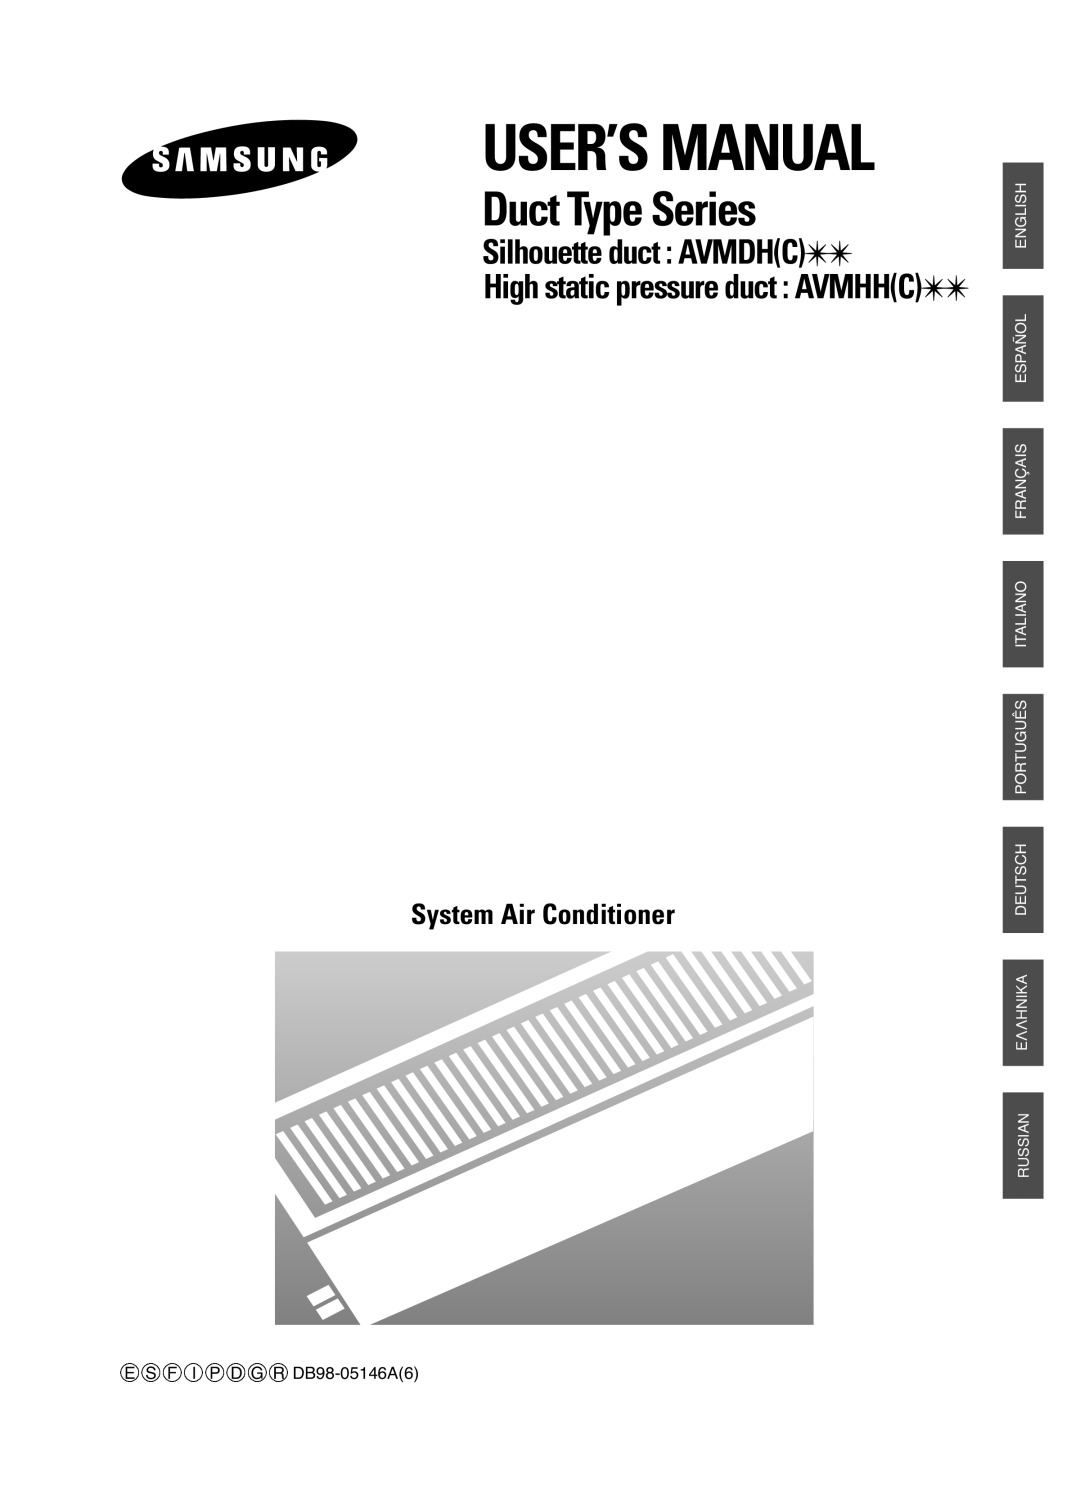 Samsung AVMHH(C) user manual Duct Type Series, Silhouette duct AVMDHC, High static pressure duct AVMHHC 